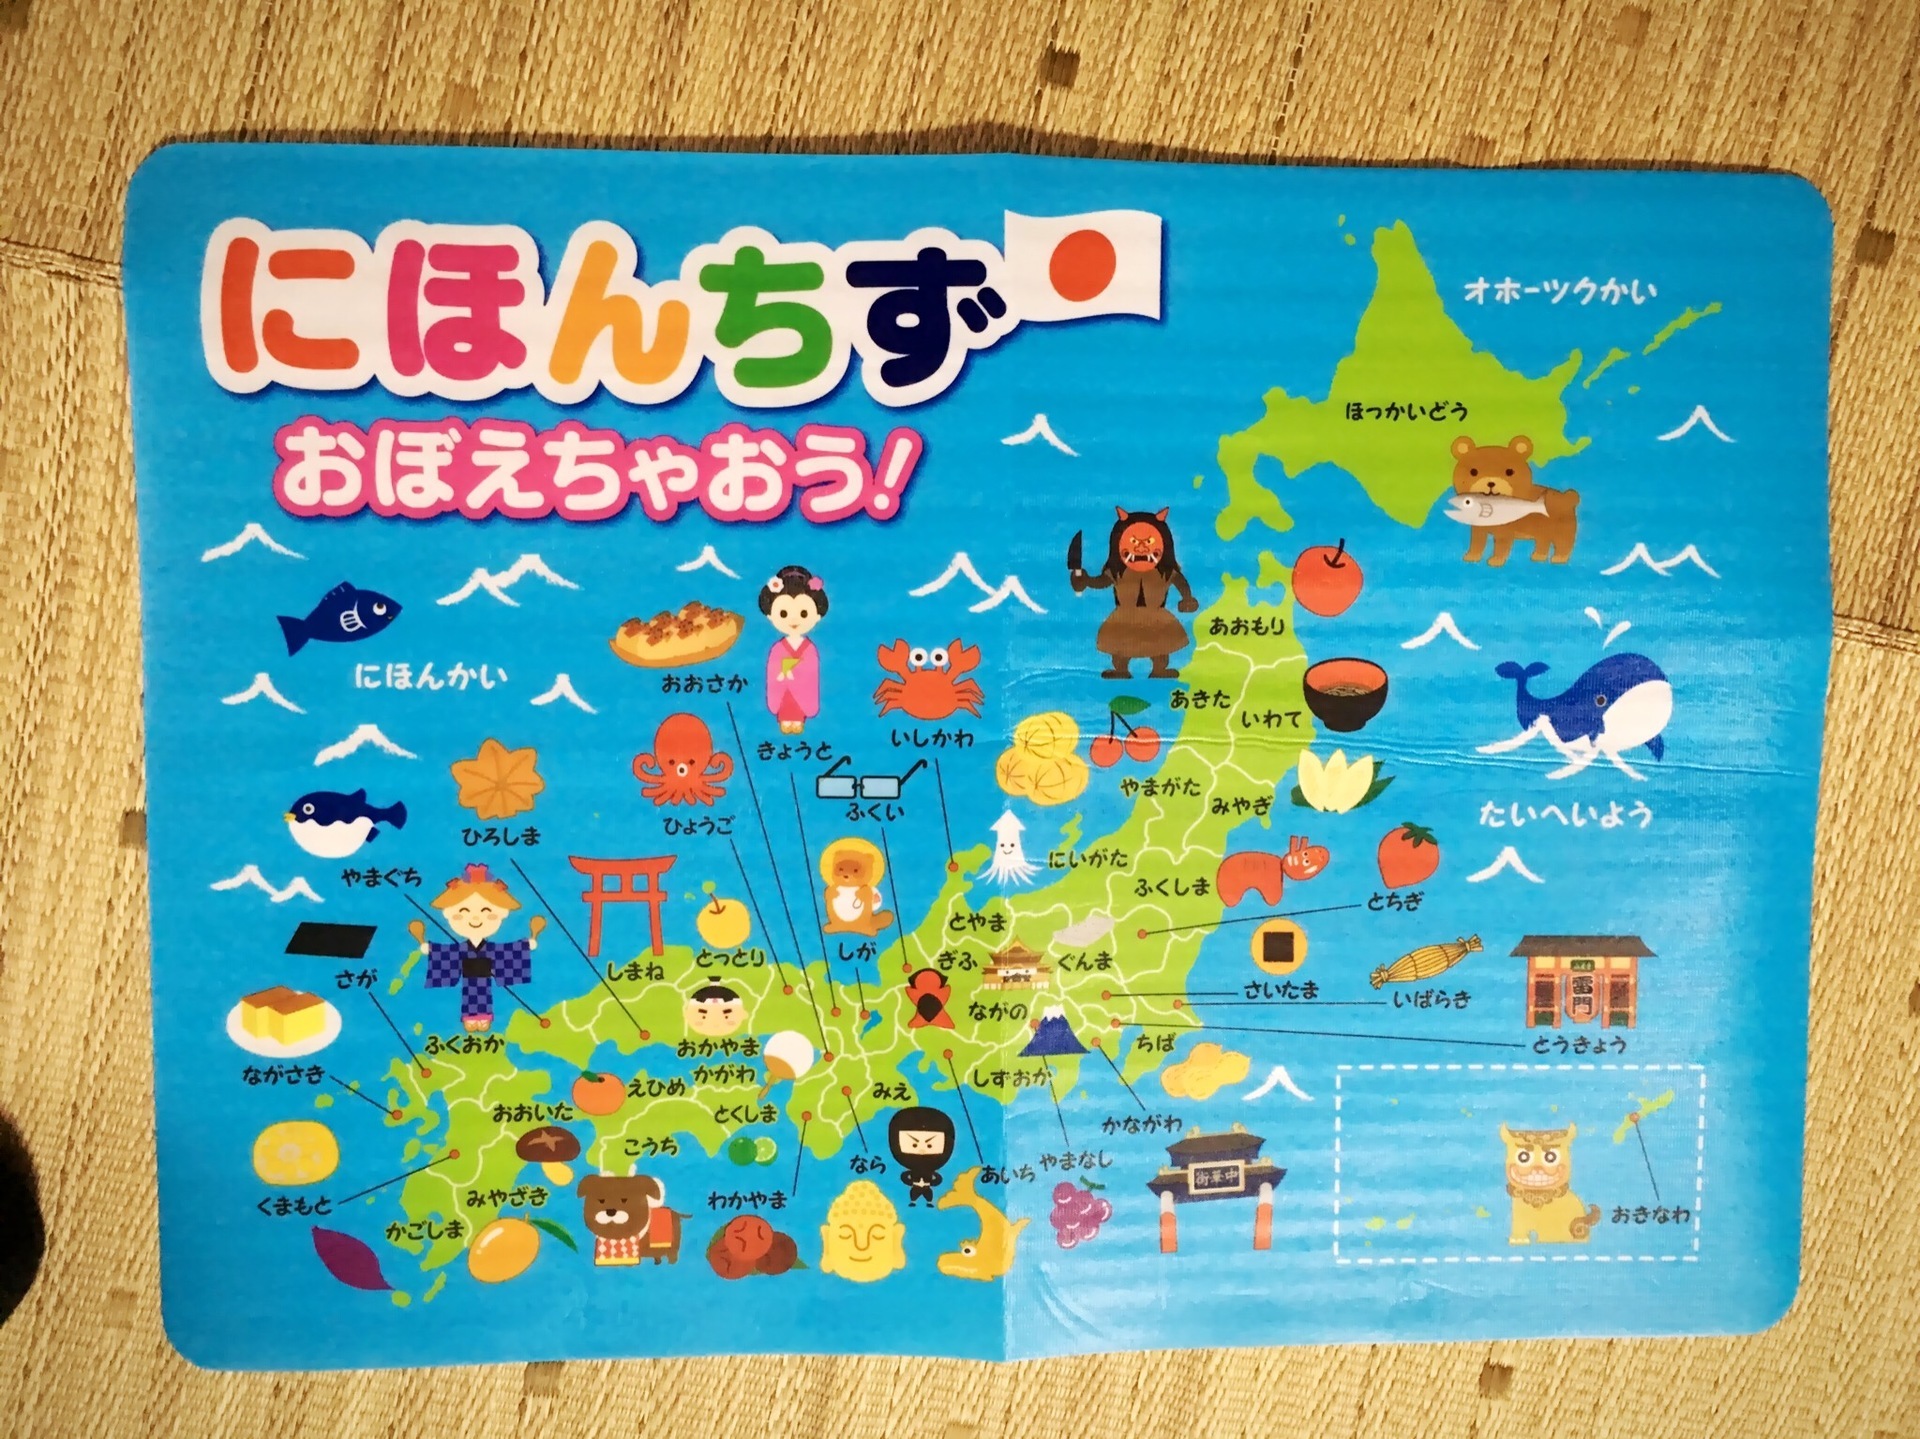 キャンドゥの日本地図が全部ひらがなで幼児向けでイイネ 百均